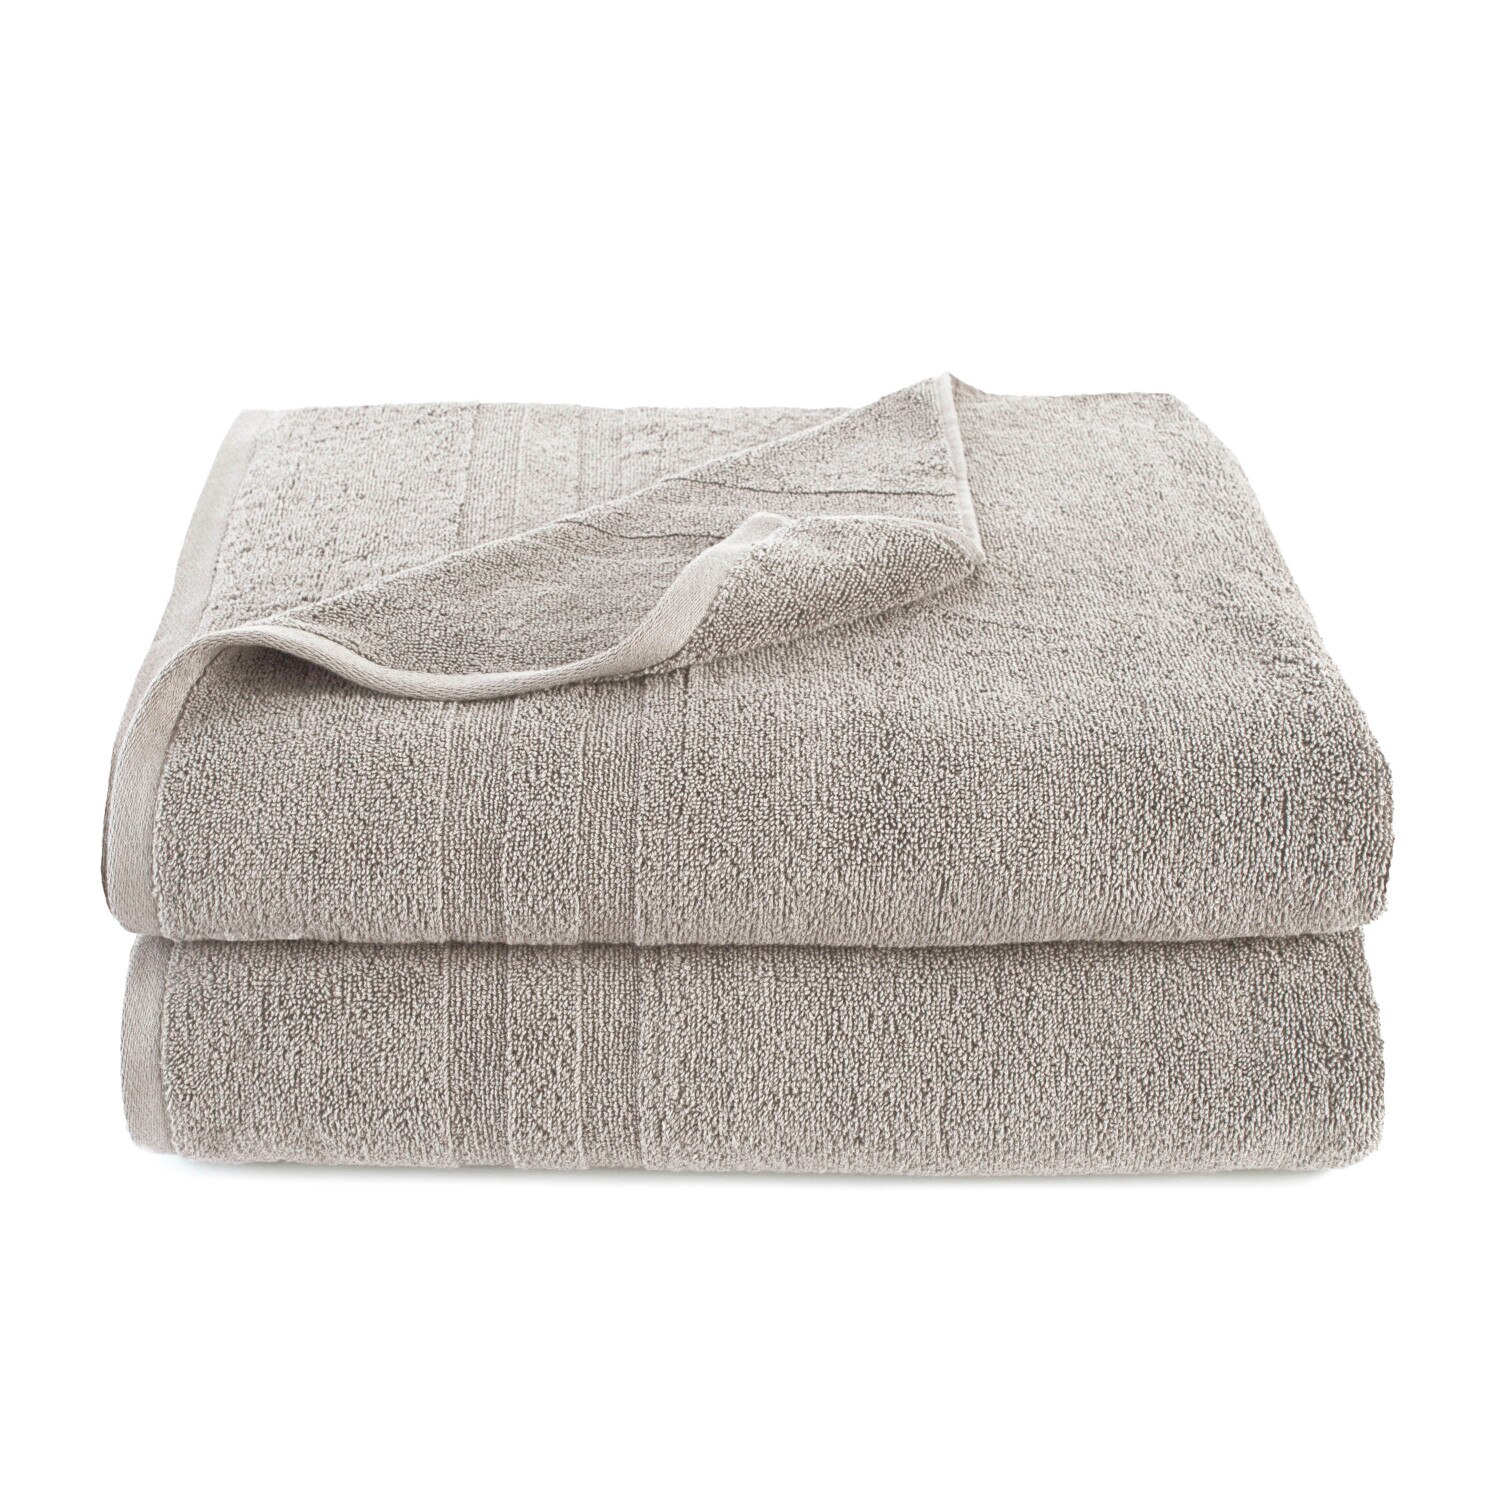 Martex Purity Solid 2-Piece Towel Set